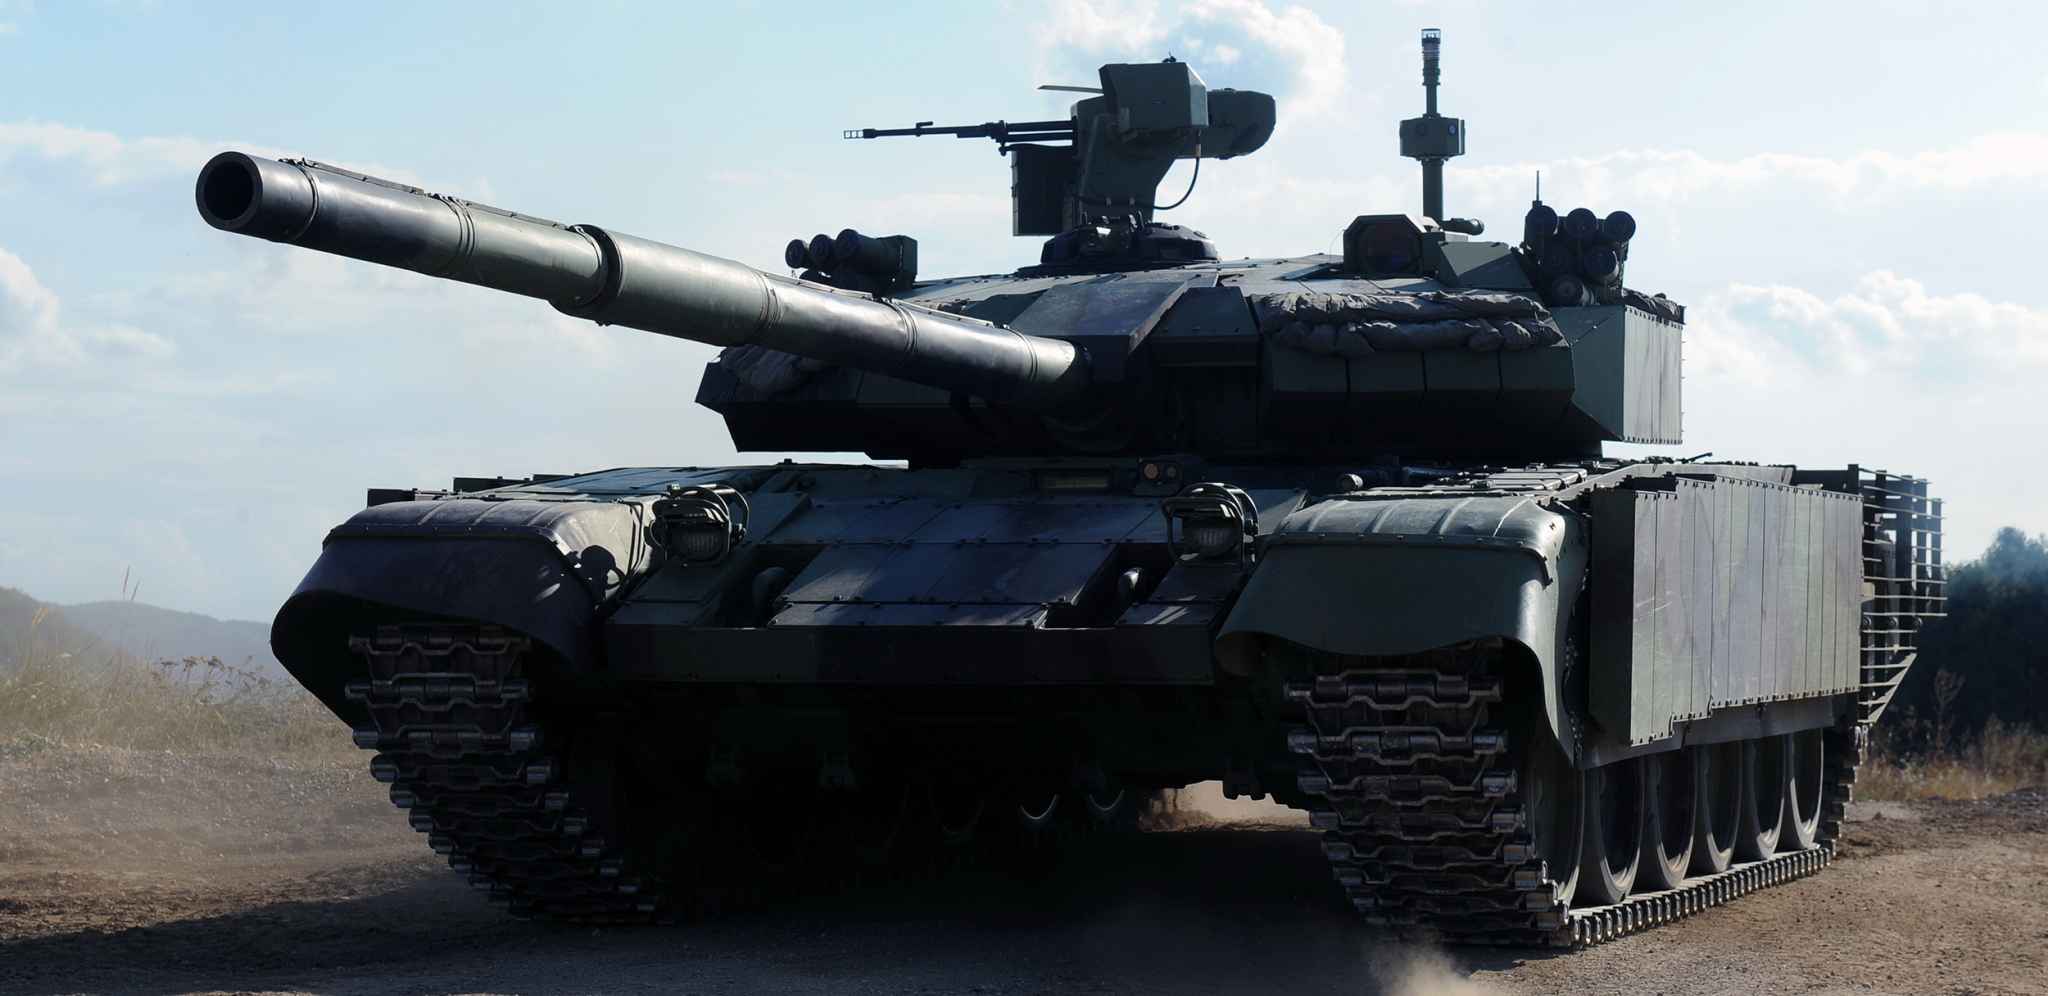 NEUNIŠTIVI TERMINATOR Vojska Srbije ima pakleno oružje u svojim oklopnim jedinicama, za ovaj moćni tenk čule su sve sile sveta (FOTO/VIDEO)